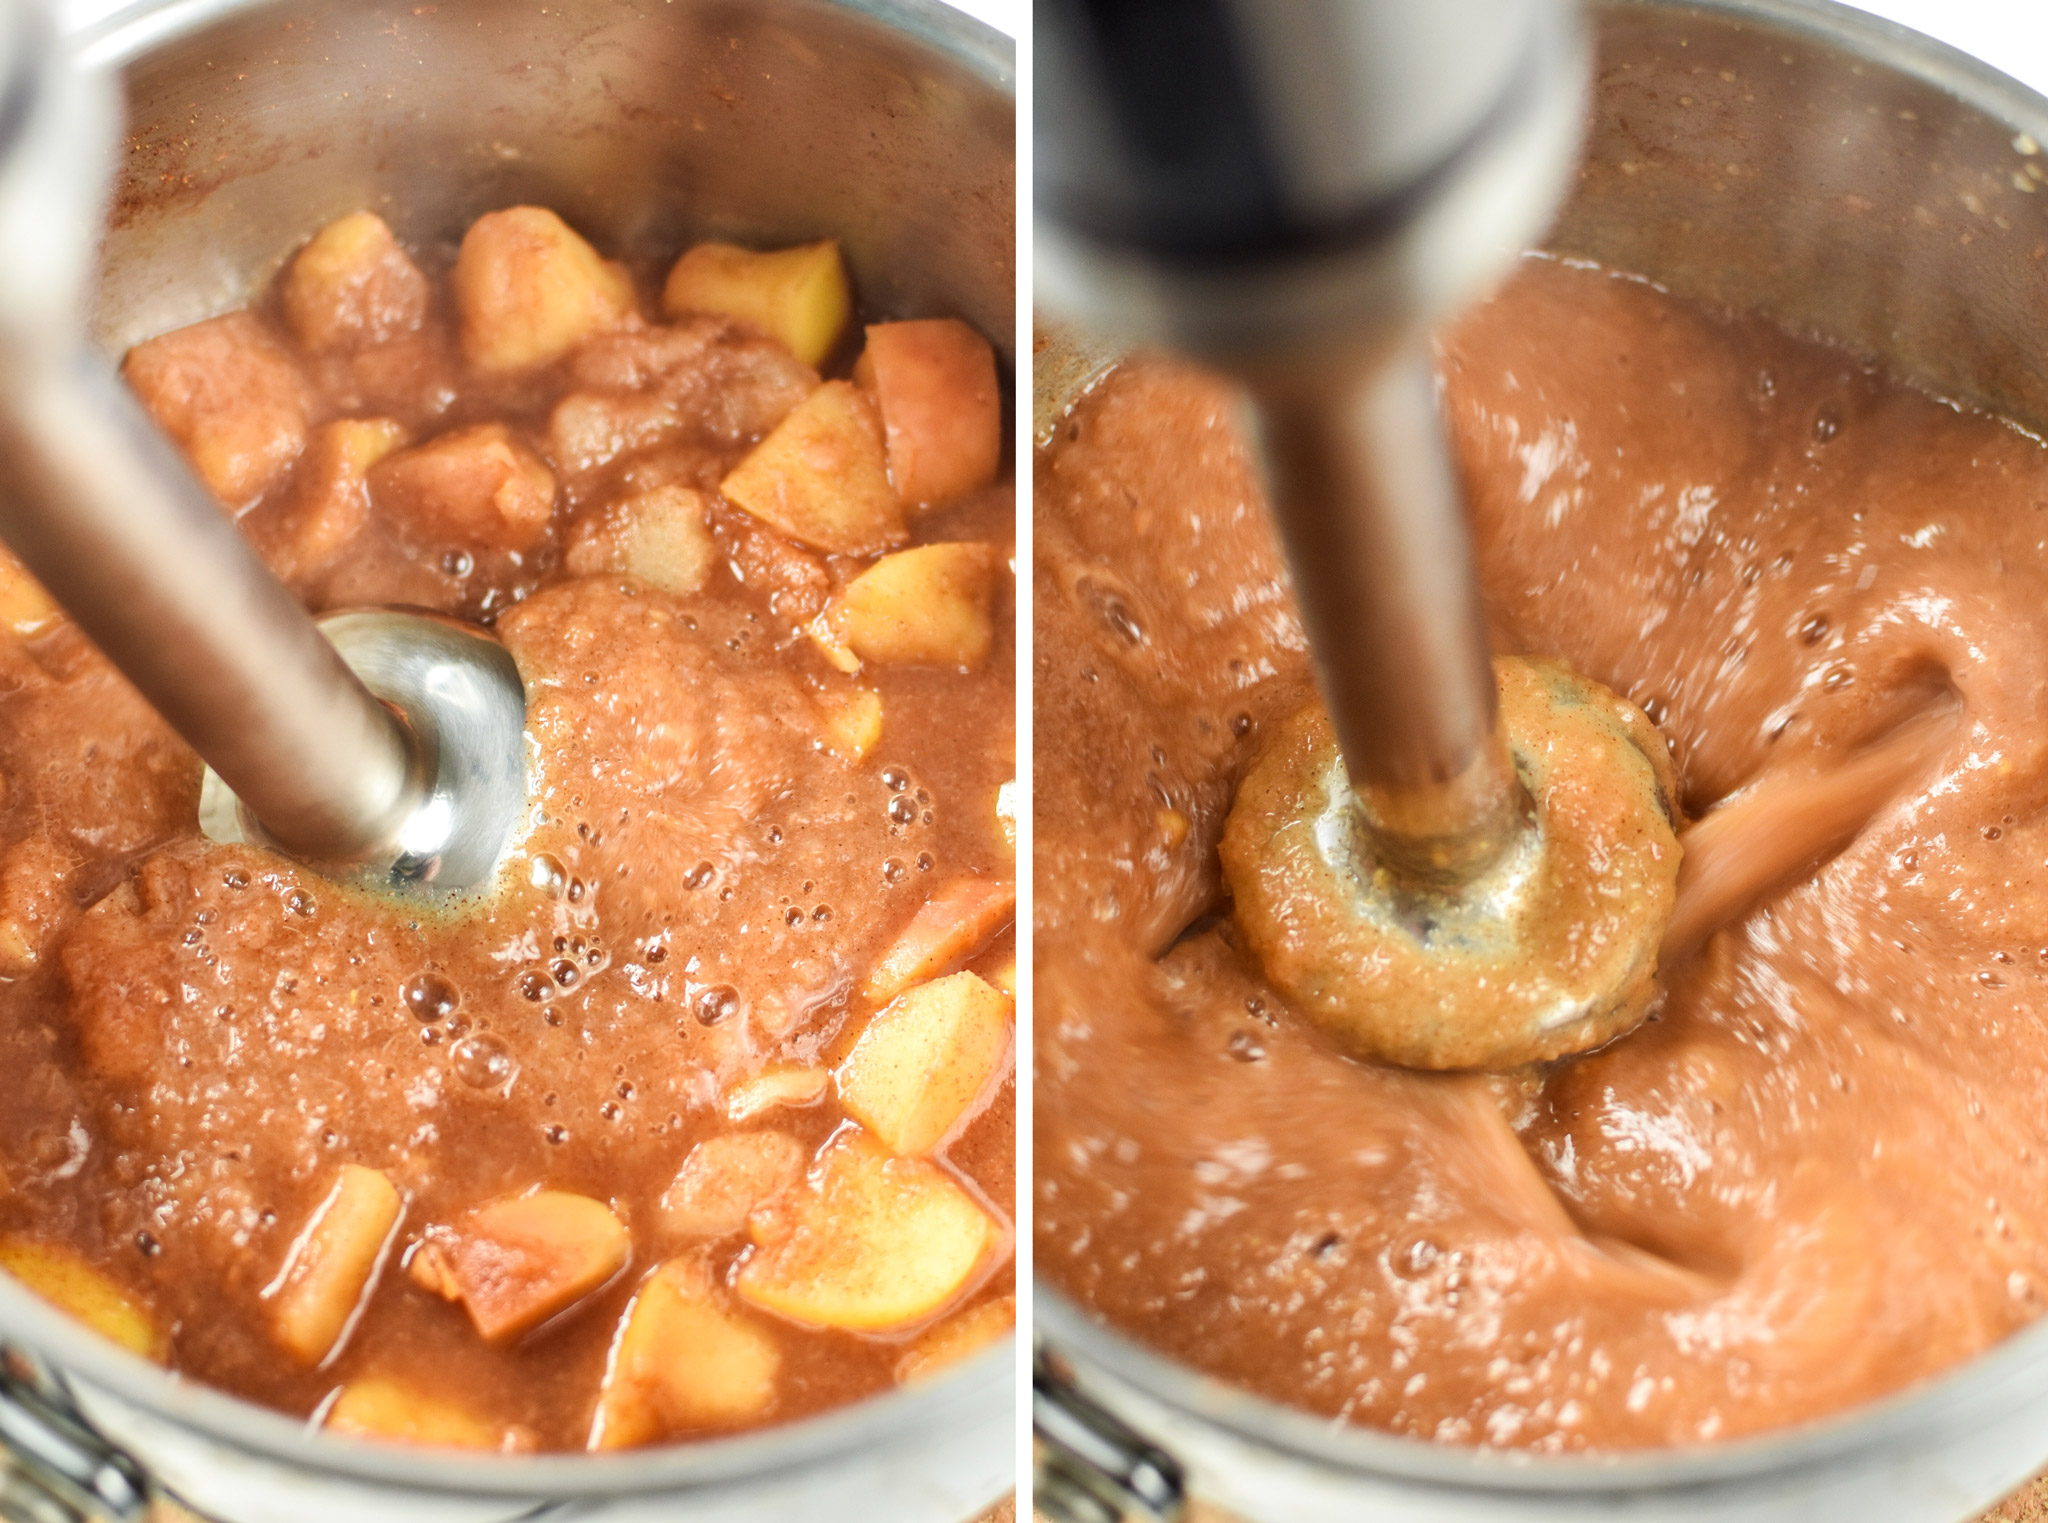 Blending the applesauce for the ginger pear cinnamon applesauce